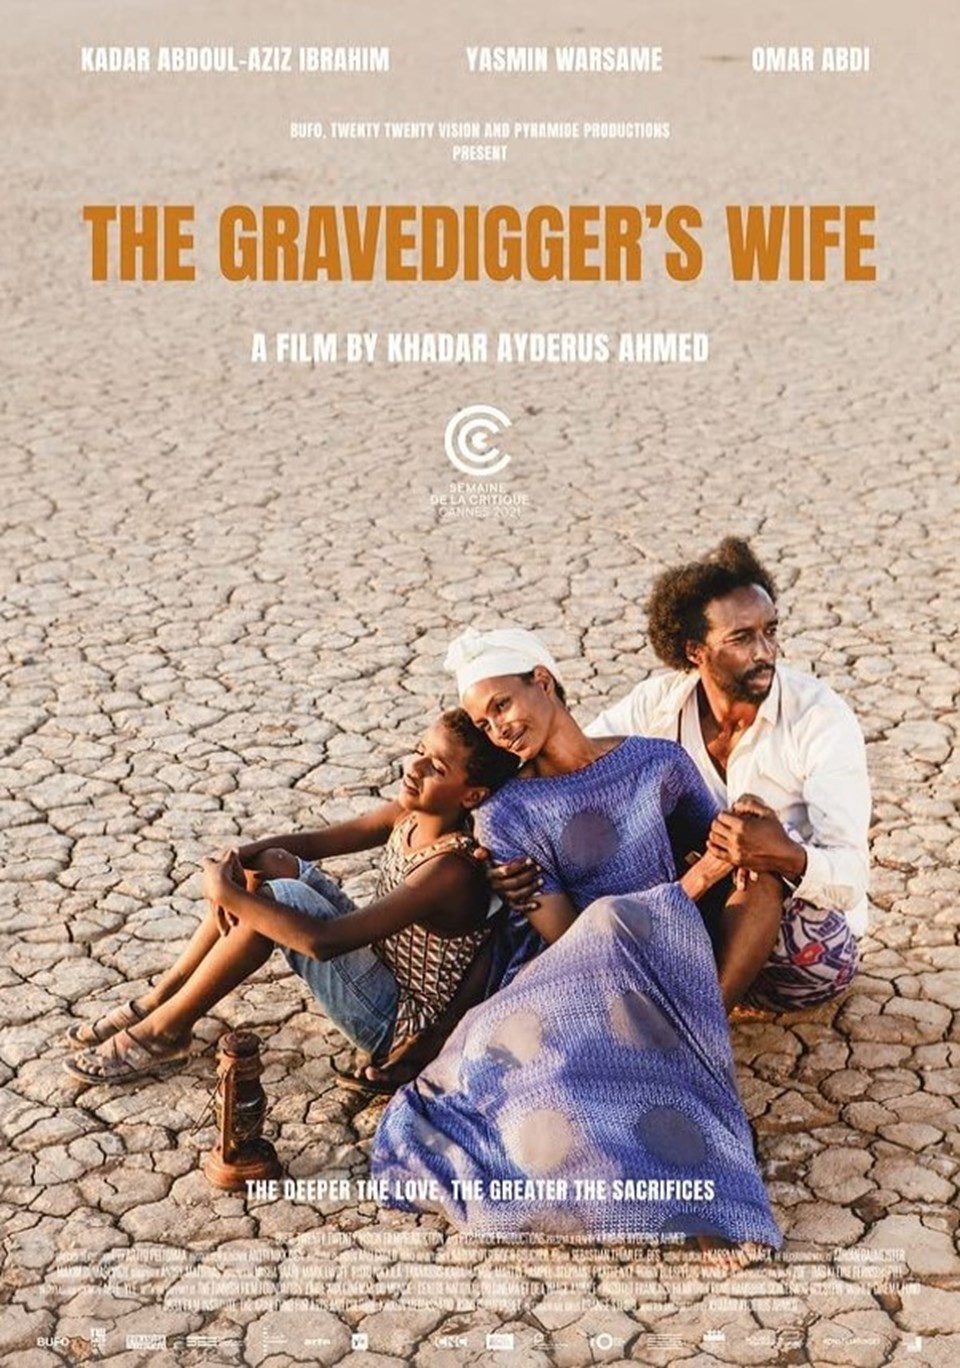 Somali yapımı bir film ilk kez Oscar'a aday gösterildi: The Gravedigger's Wife - 1